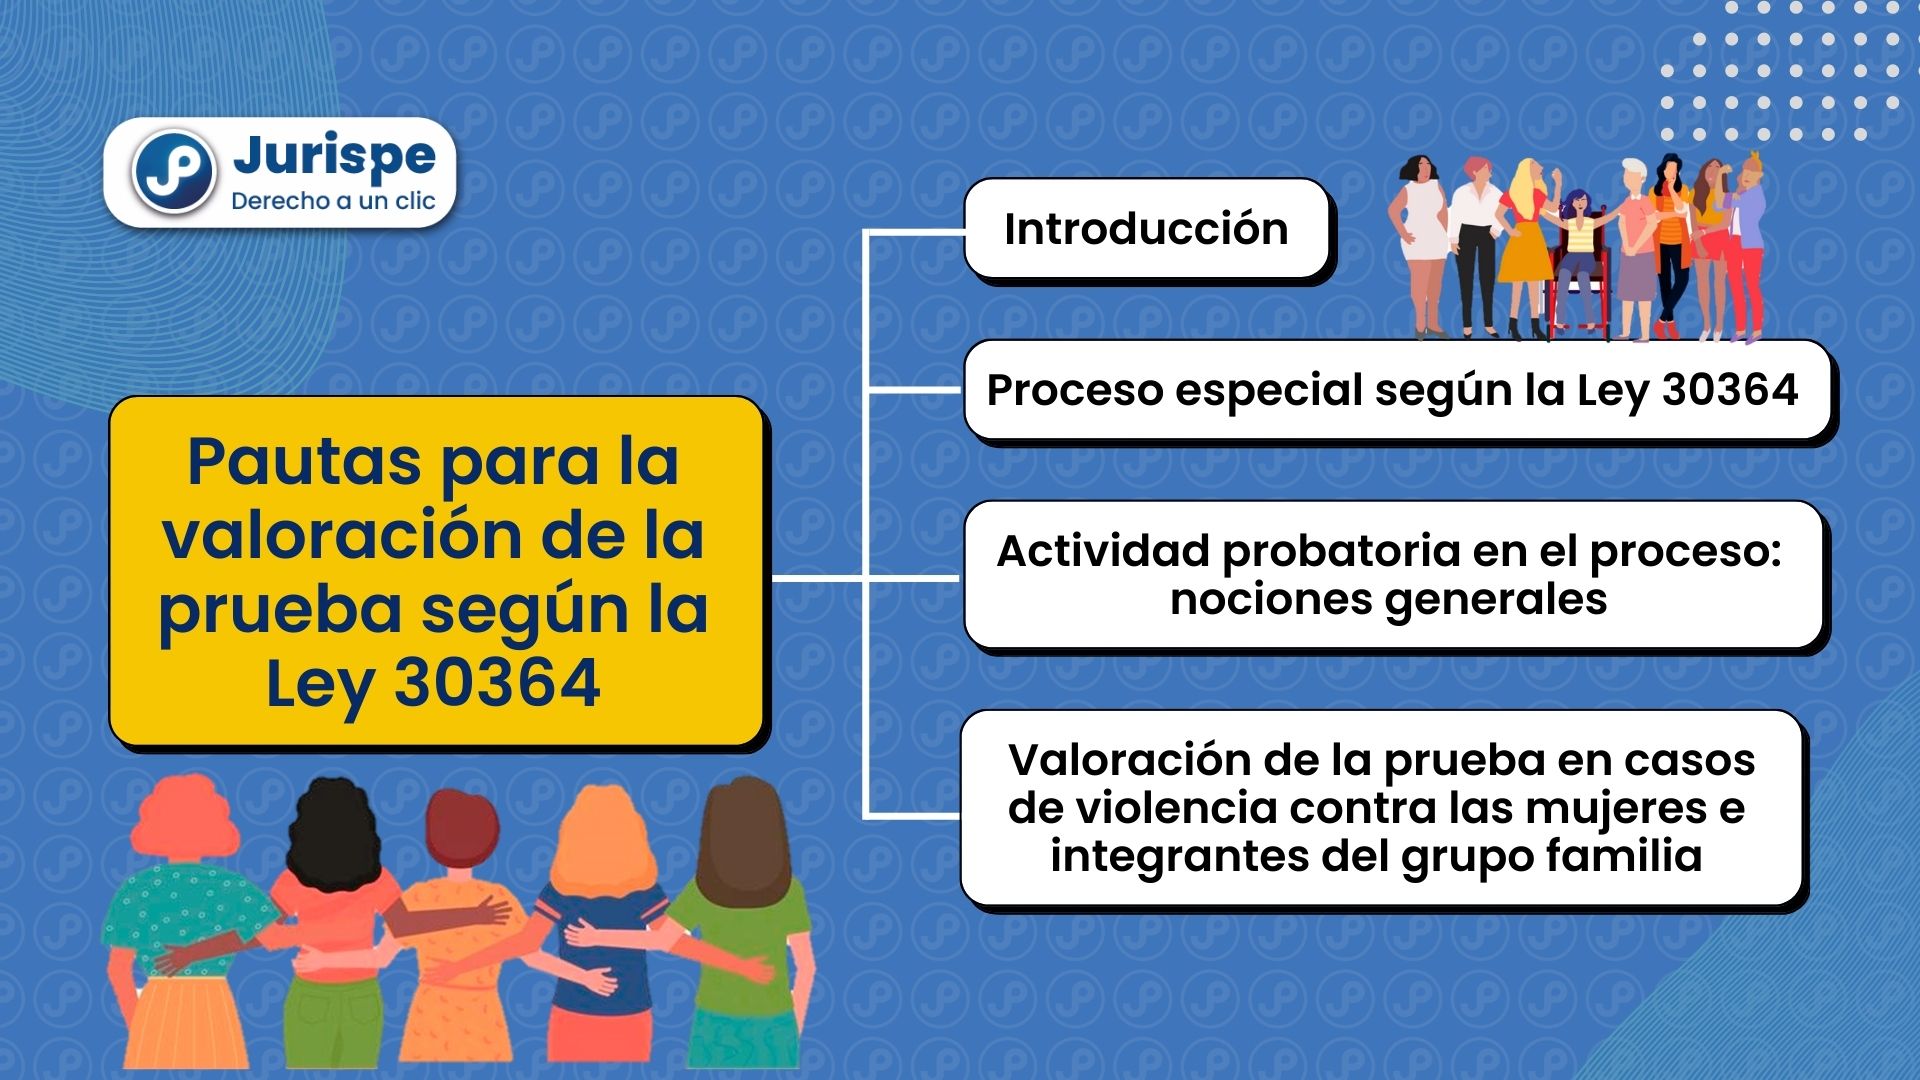 Pautas para la valoración de la prueba en el marco de la Ley 30364 (violencia contra las mujeres e integrantes del grupo familiar)